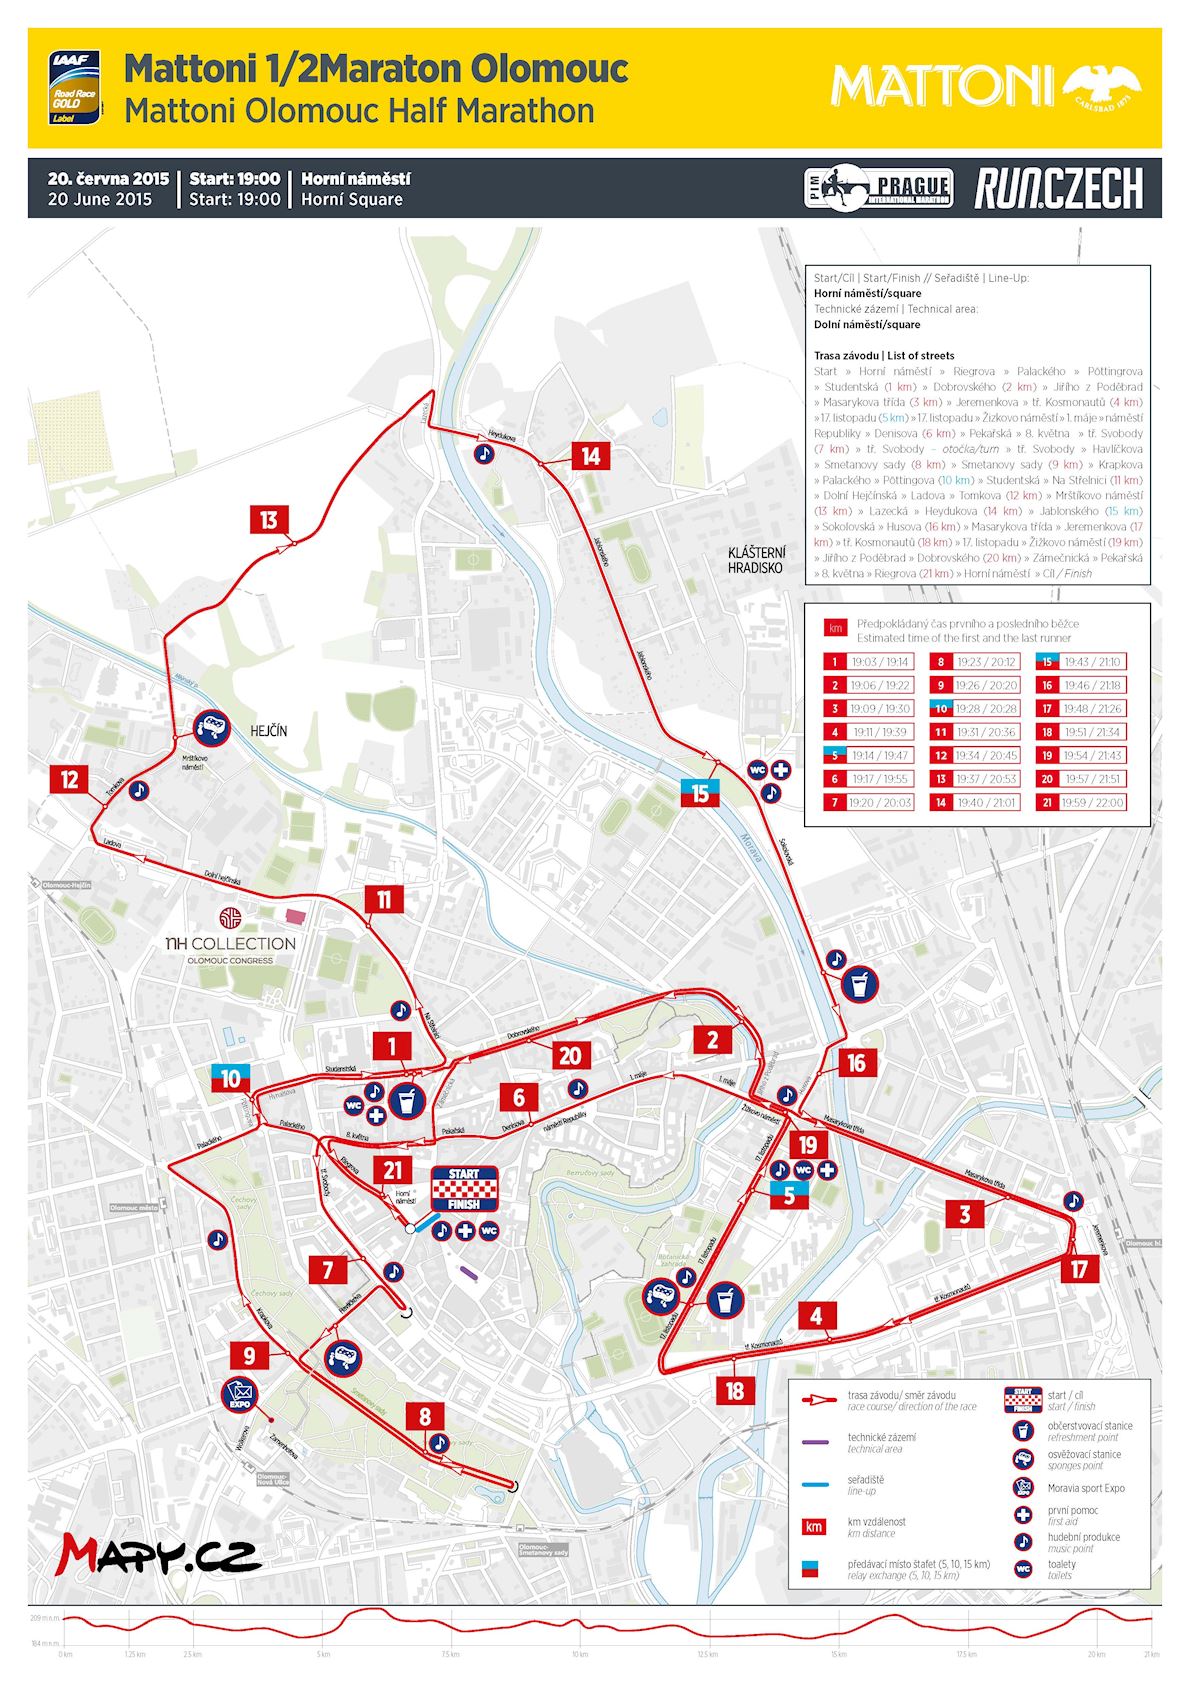 Mattoni Olomouc Half Marathon Mappa del percorso